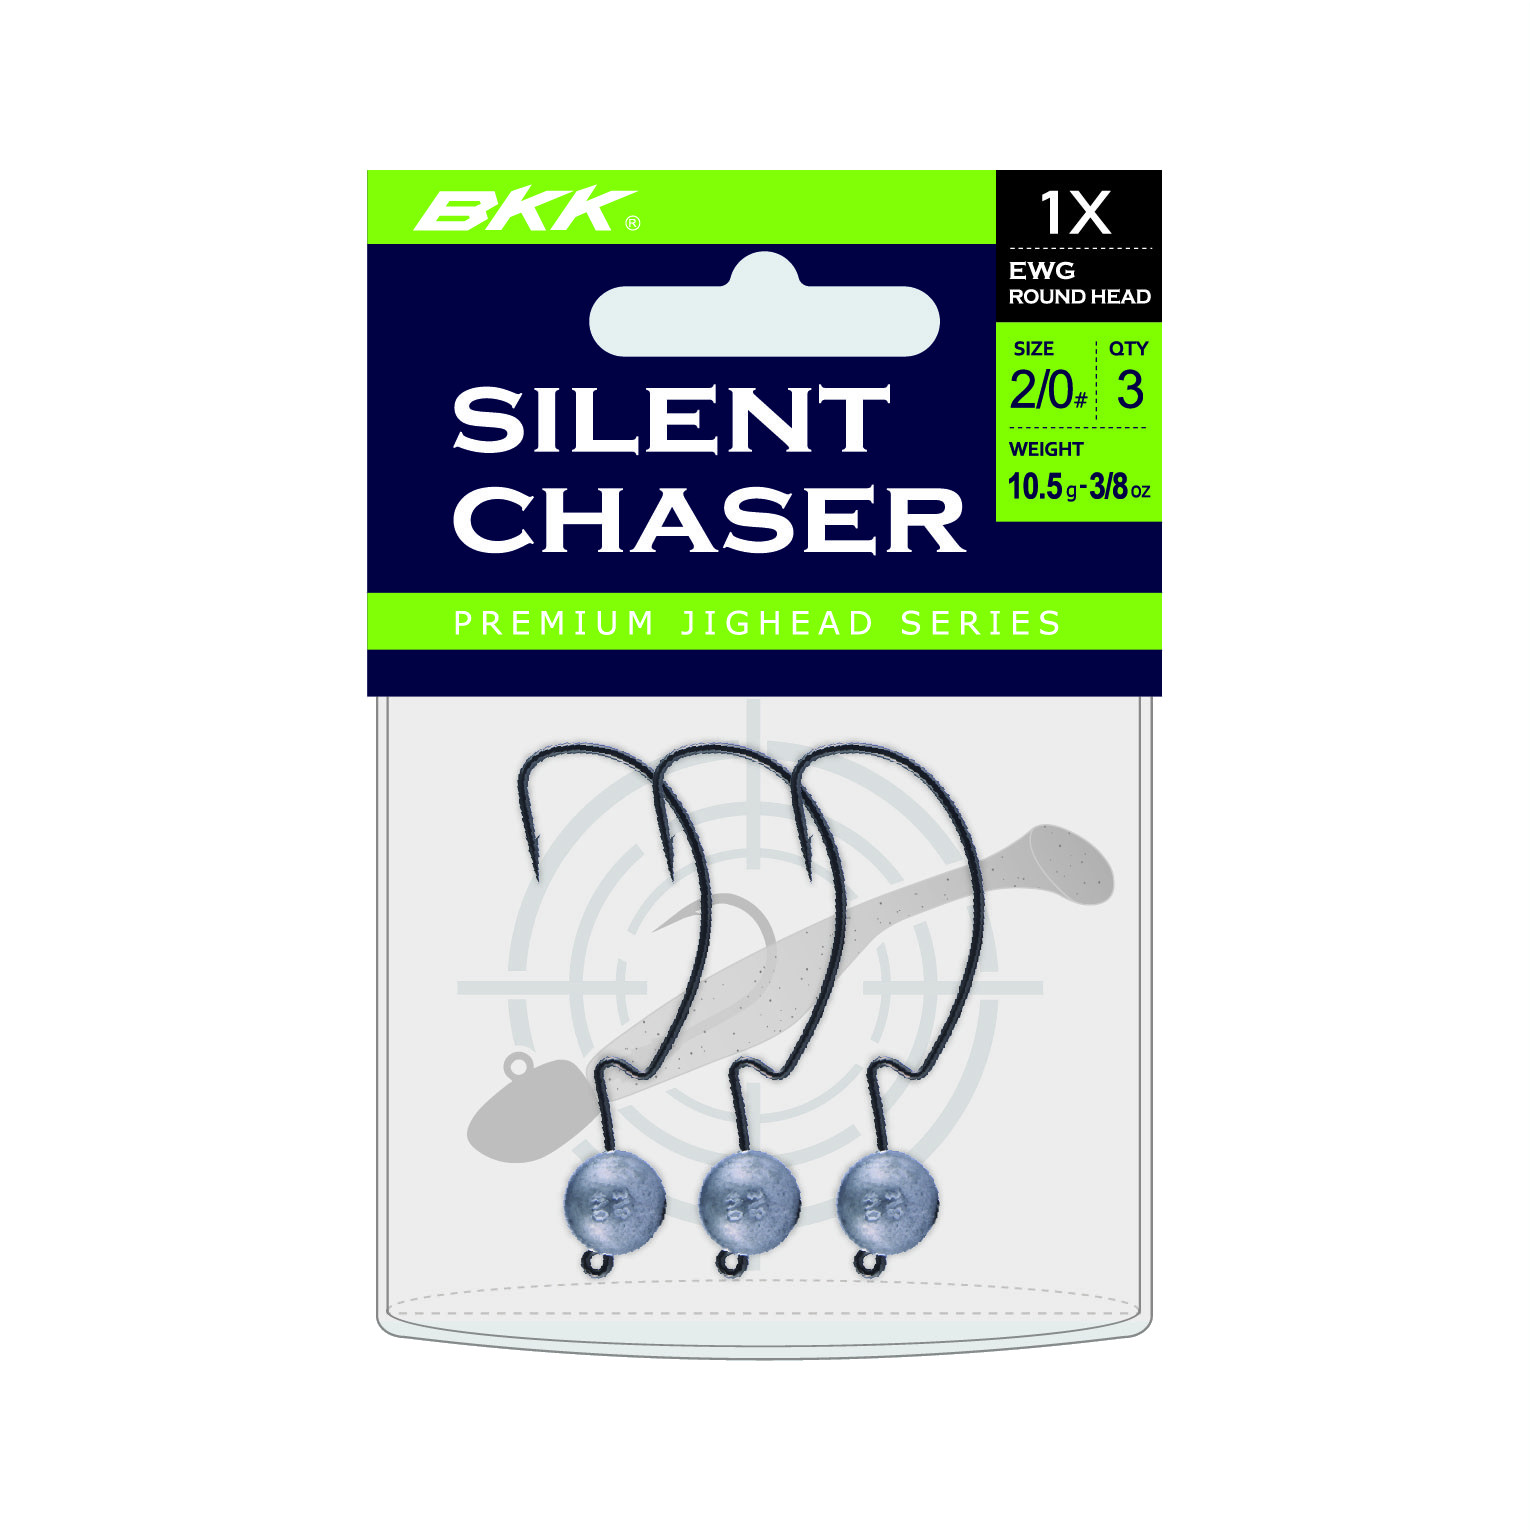 BKK Silent Chaser 1X EWG Round Head Bleikopf #3/0